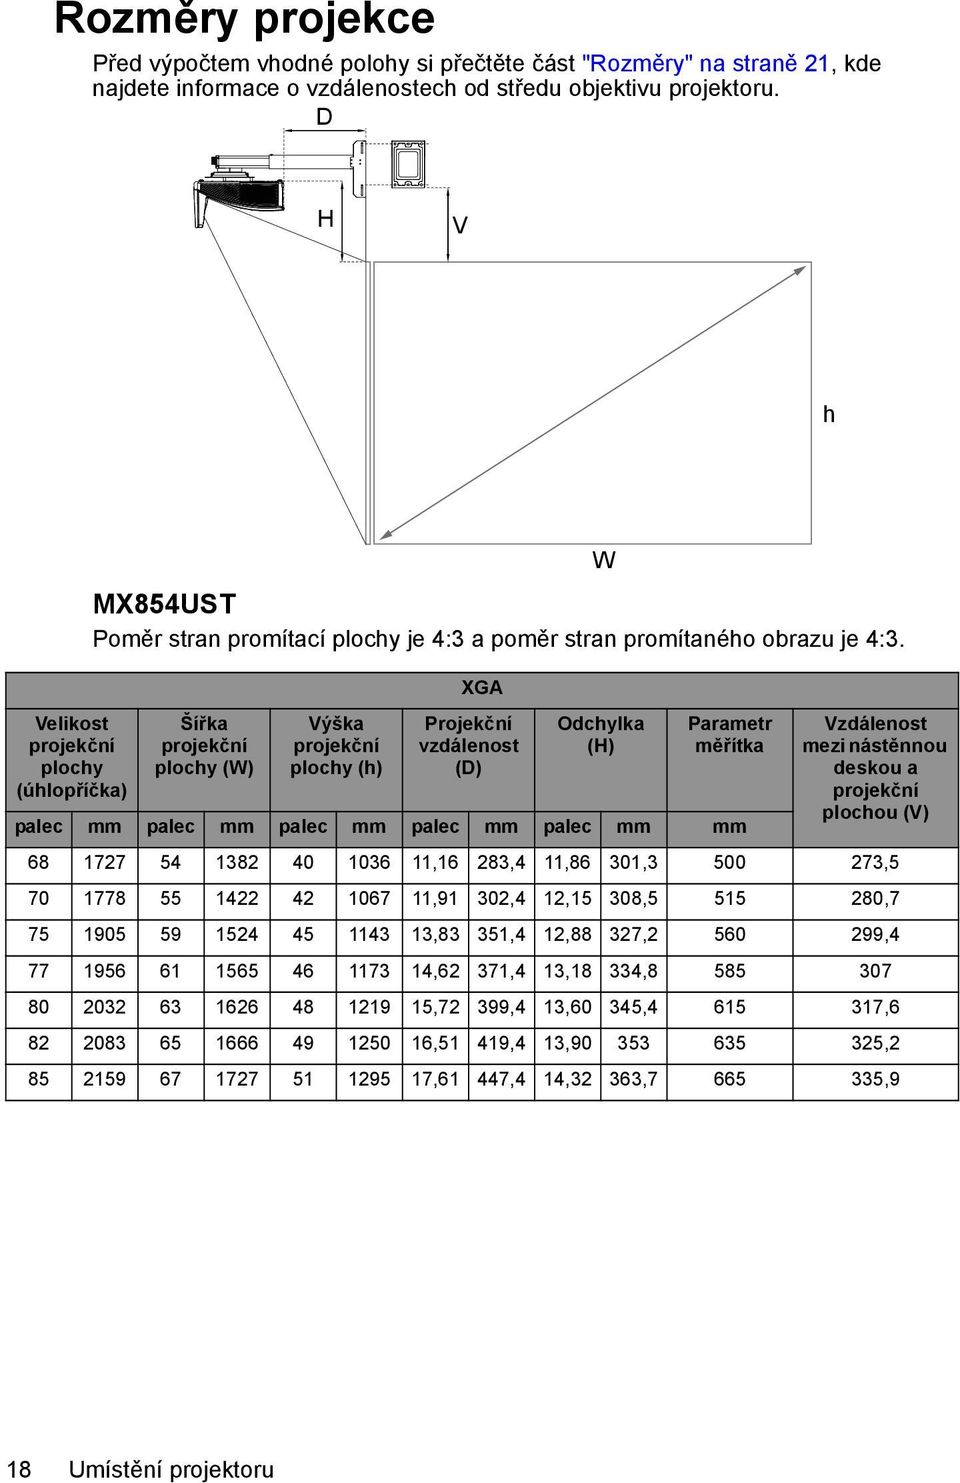 Šířka projekční plochy (W) Výška projekční plochy (h) XGA Projekční vzdálenost (D) W Odchylka (H) Parametr měřítka Vzdálenost mezi nástěnnou deskou a projekční plochou (V) palec mm palec mm palec mm